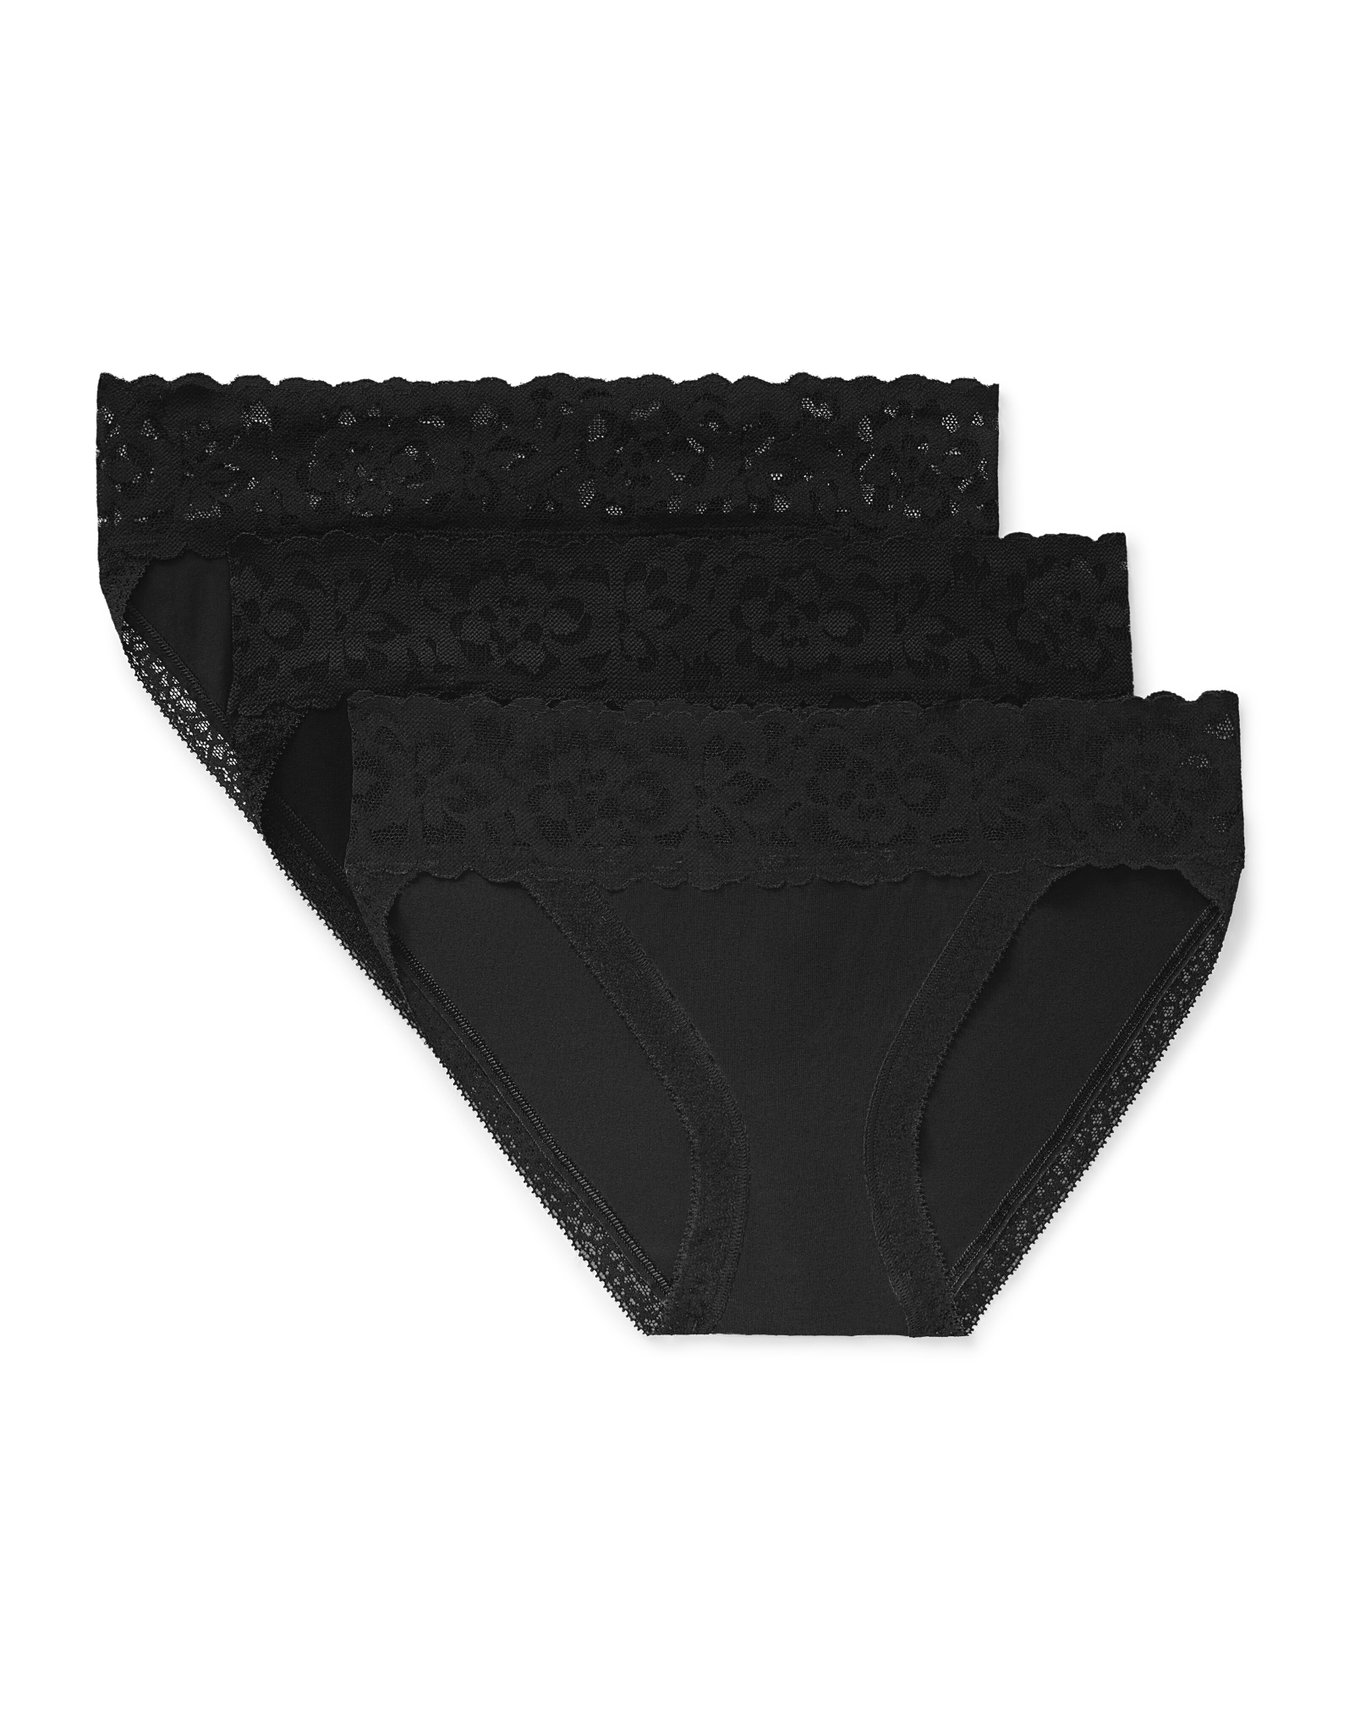 Adore Me Women's Enny Bikini Panty 0X / Jet Black.